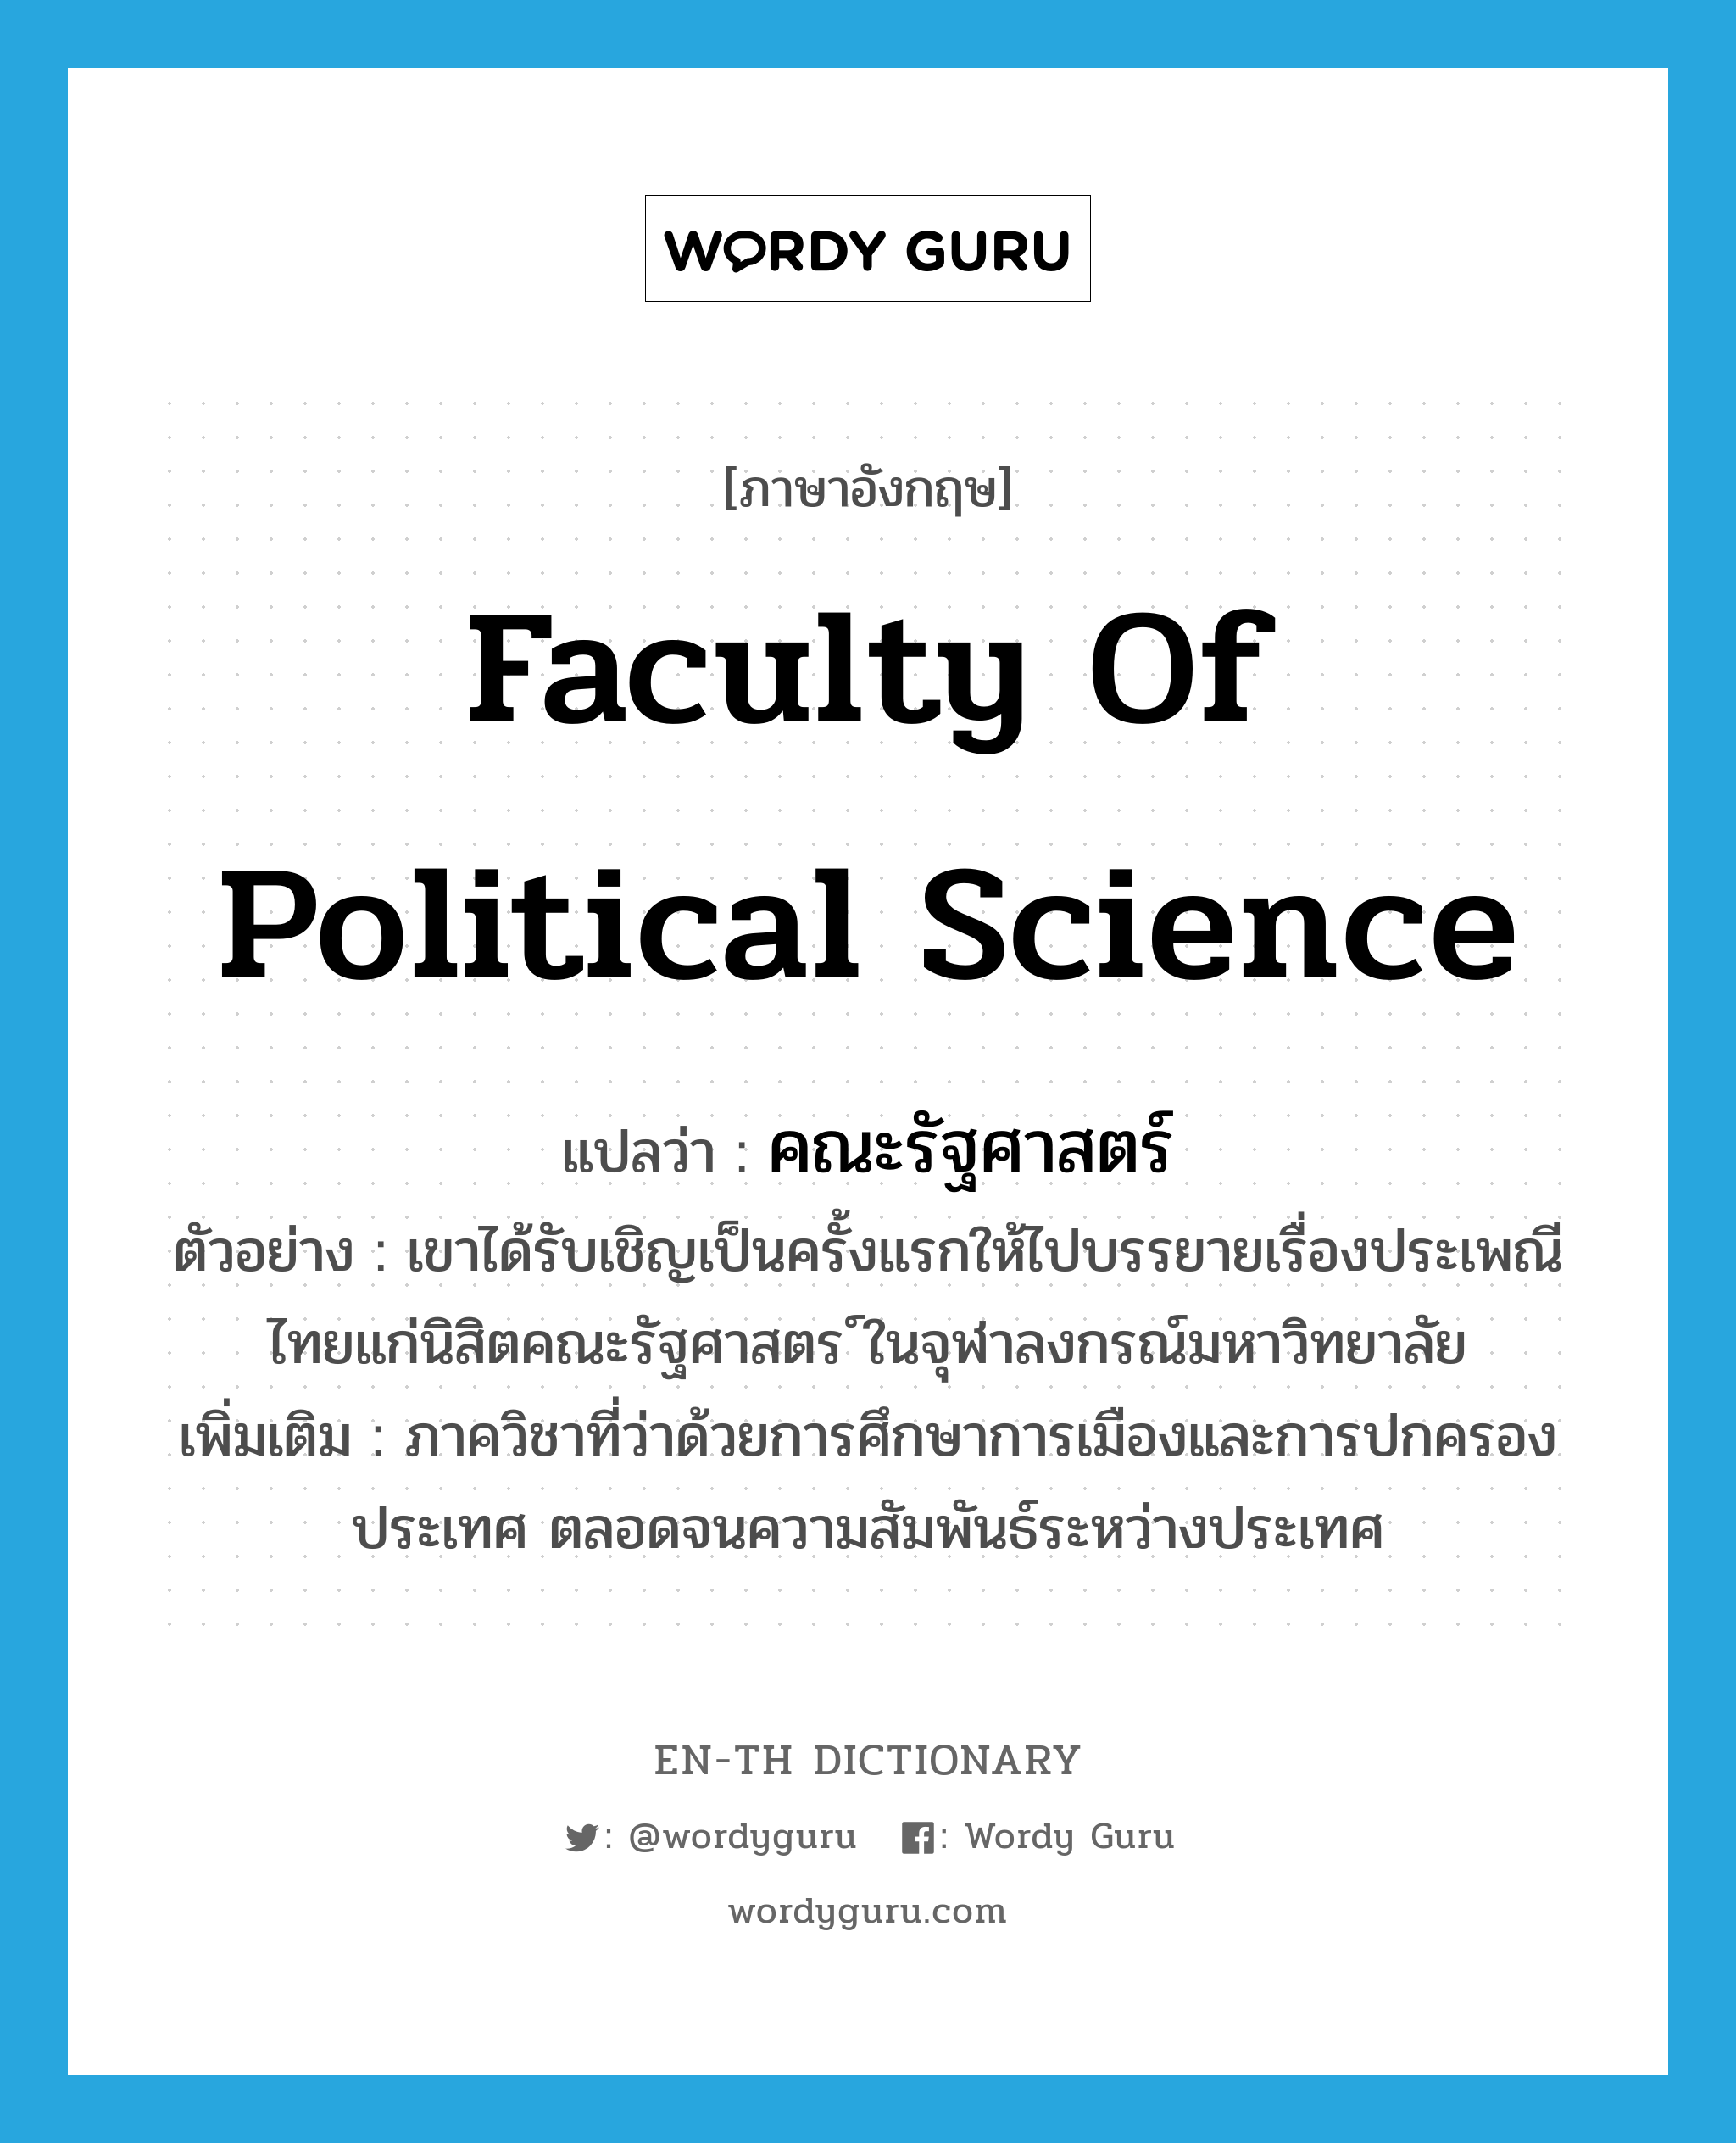 คณะรัฐศาสตร์ ภาษาอังกฤษ?, คำศัพท์ภาษาอังกฤษ คณะรัฐศาสตร์ แปลว่า Faculty of Political Science ประเภท N ตัวอย่าง เขาได้รับเชิญเป็นครั้งแรกให้ไปบรรยายเรื่องประเพณีไทยแก่นิสิตคณะรัฐศาสตร ์ในจุฬาลงกรณ์มหาวิทยาลัย เพิ่มเติม ภาควิชาที่ว่าด้วยการศึกษาการเมืองและการปกครองประเทศ ตลอดจนความสัมพันธ์ระหว่างประเทศ หมวด N